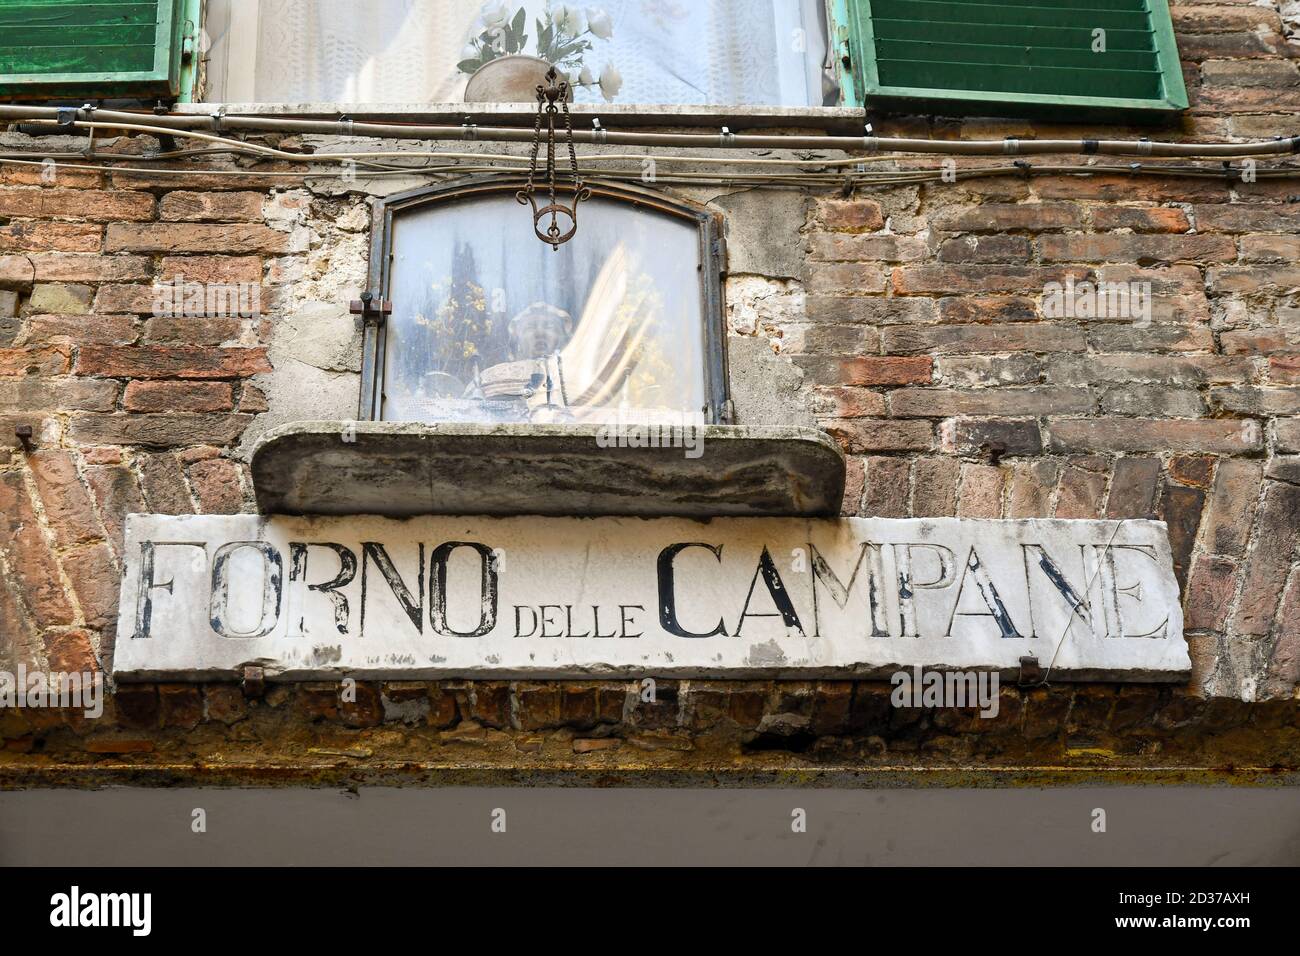 Signe de la boulangerie historique 'Forno delle Campane', ouvert dans les années 1930 dans le centre de Sienne, Toscane, Italie Banque D'Images